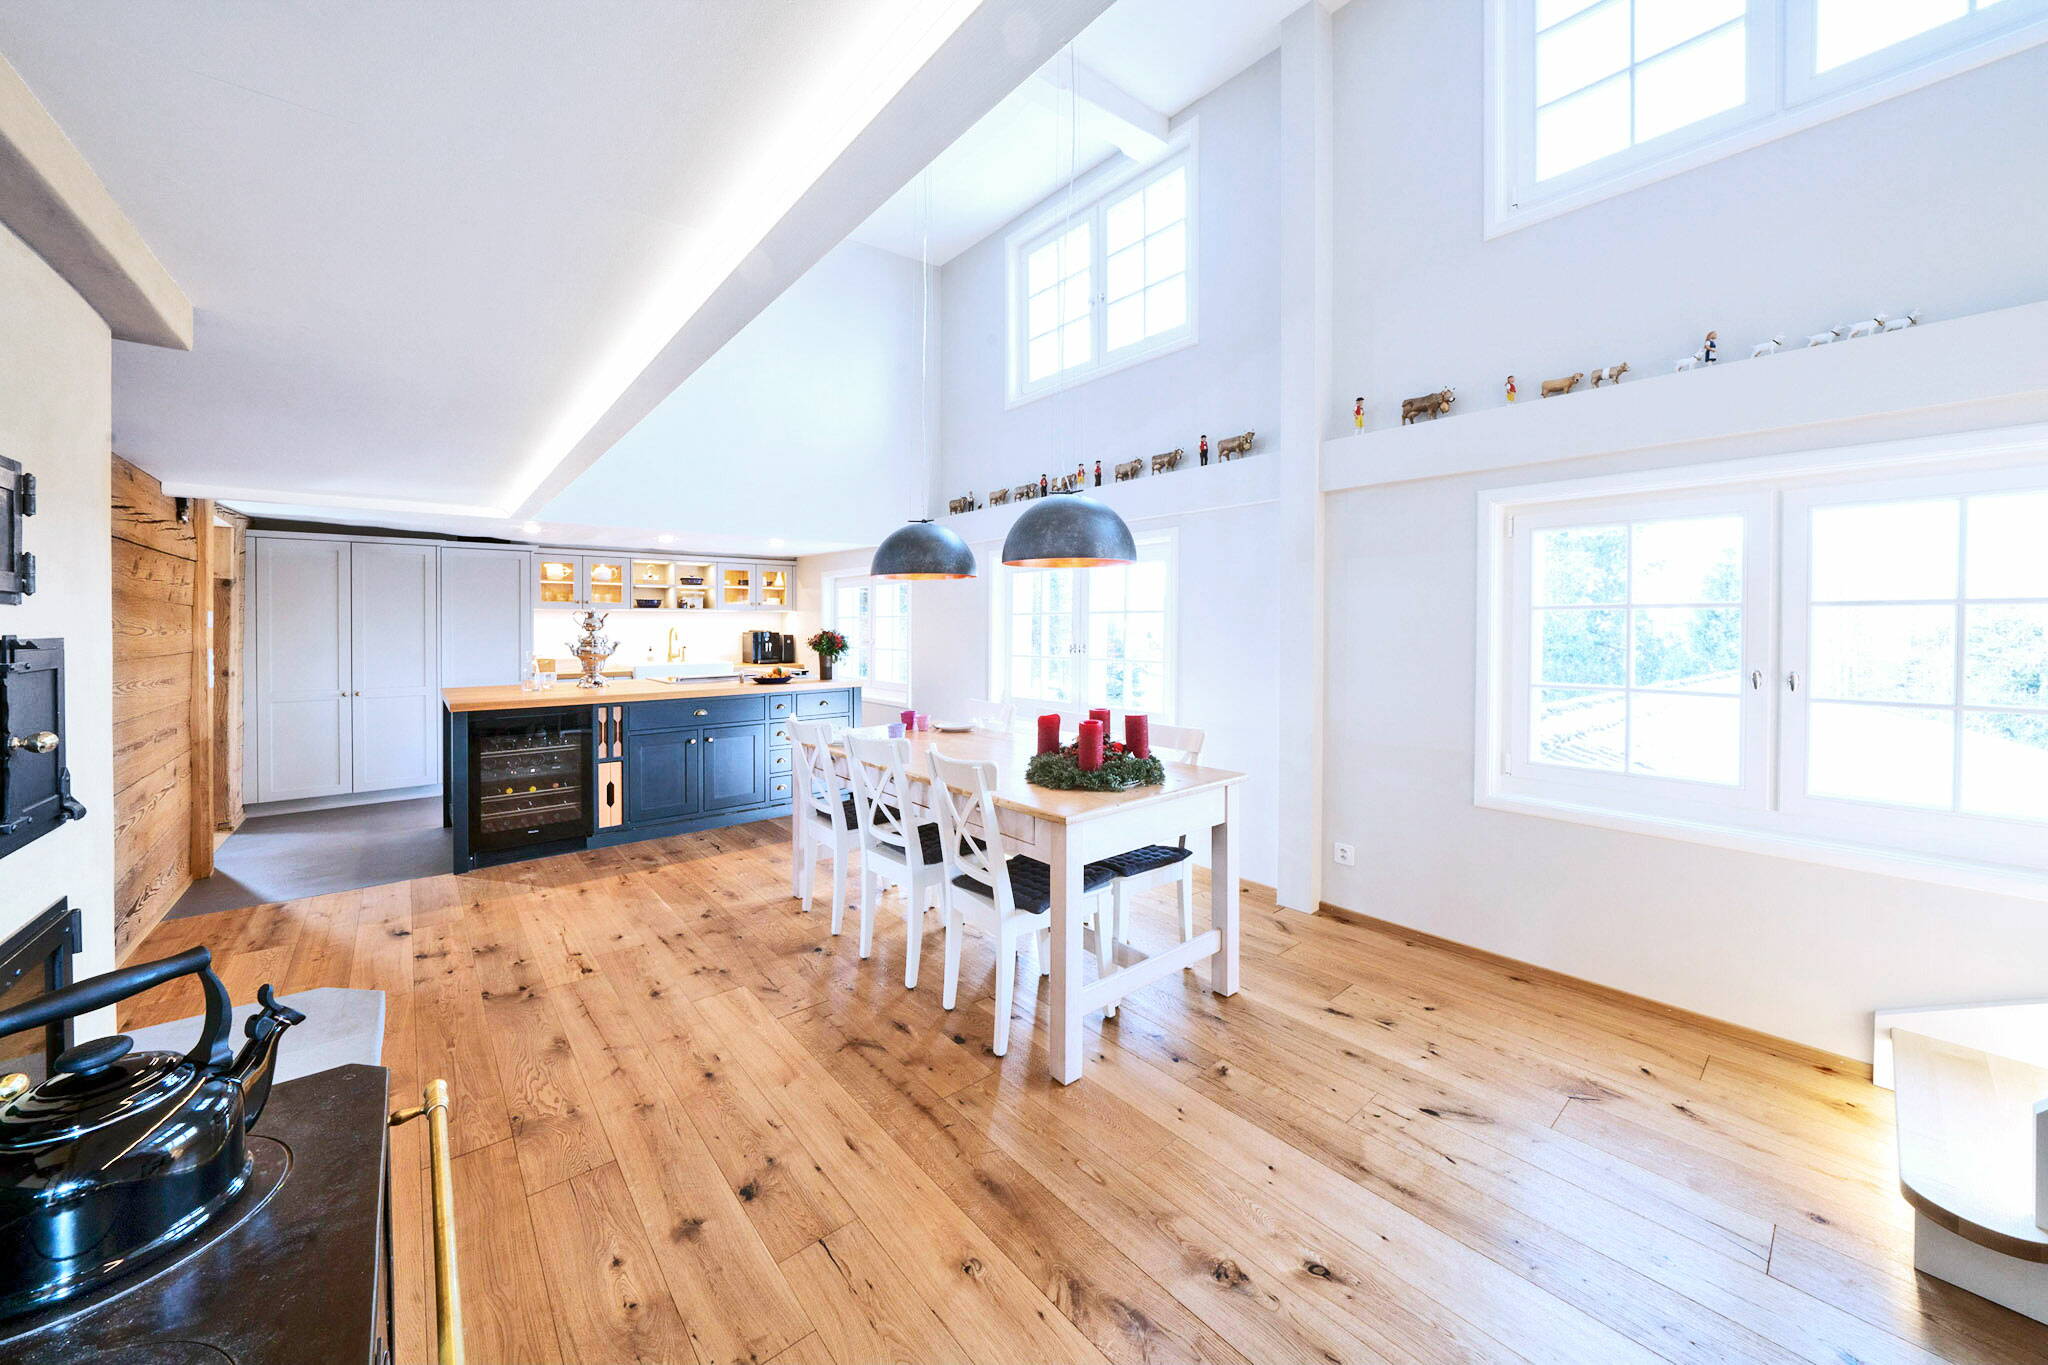 Zoom: Esszimmertisch in einem Wohnzimmer-Küchen-Bereich eines umgebauten Altbaus.